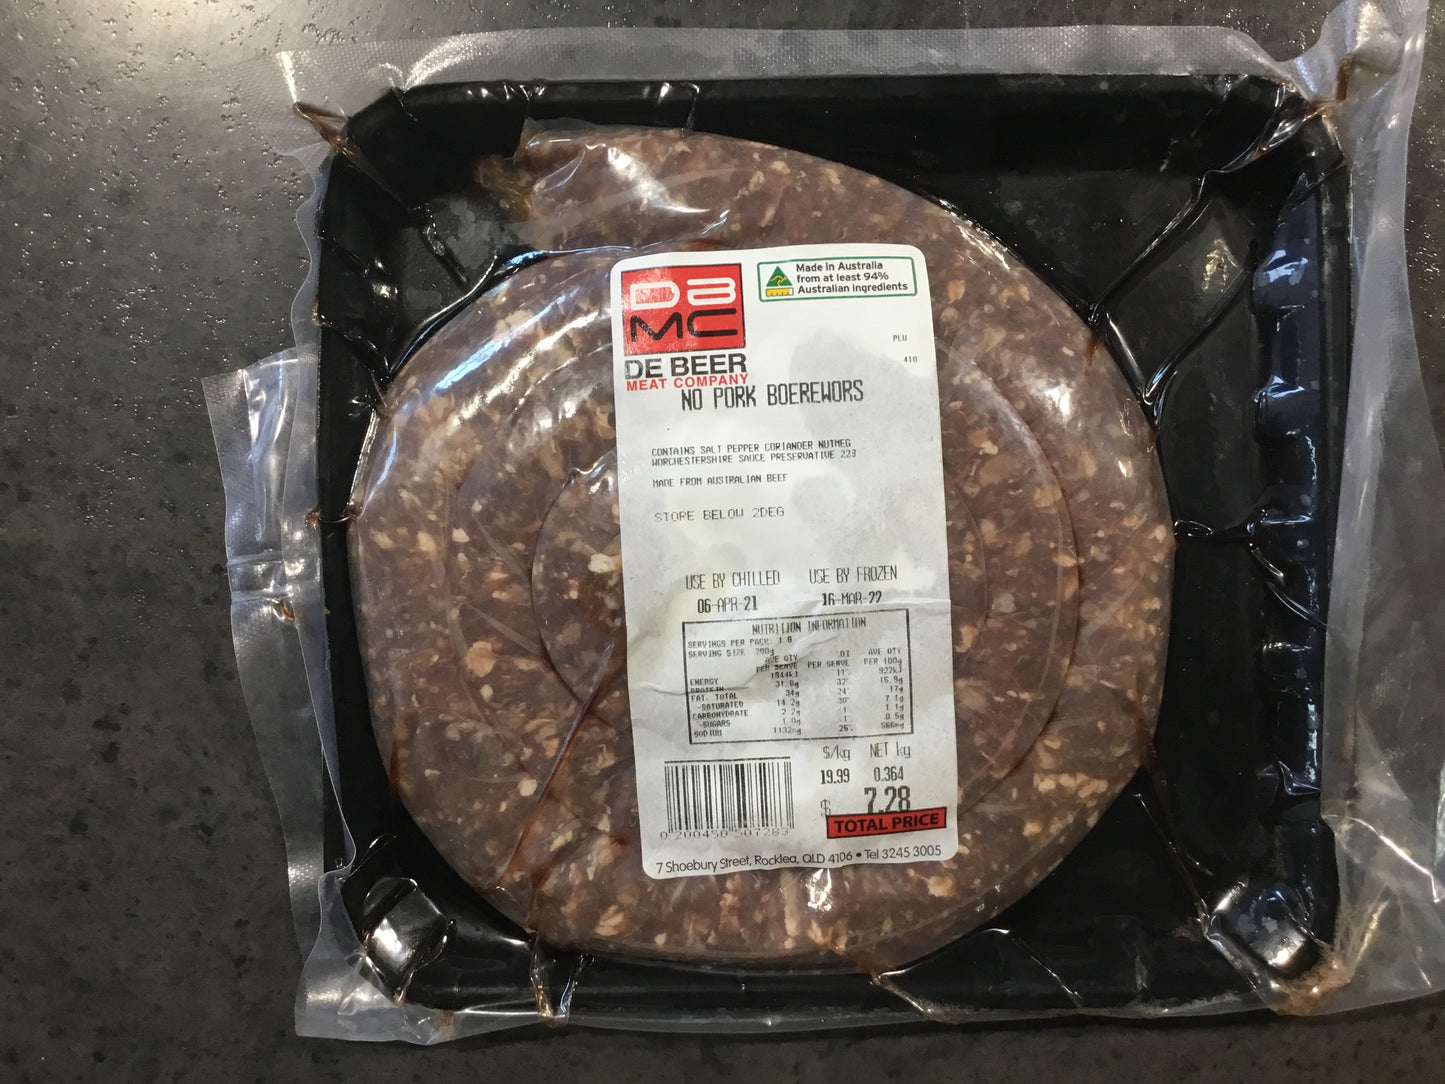 1kg of Boerewors - No Pork